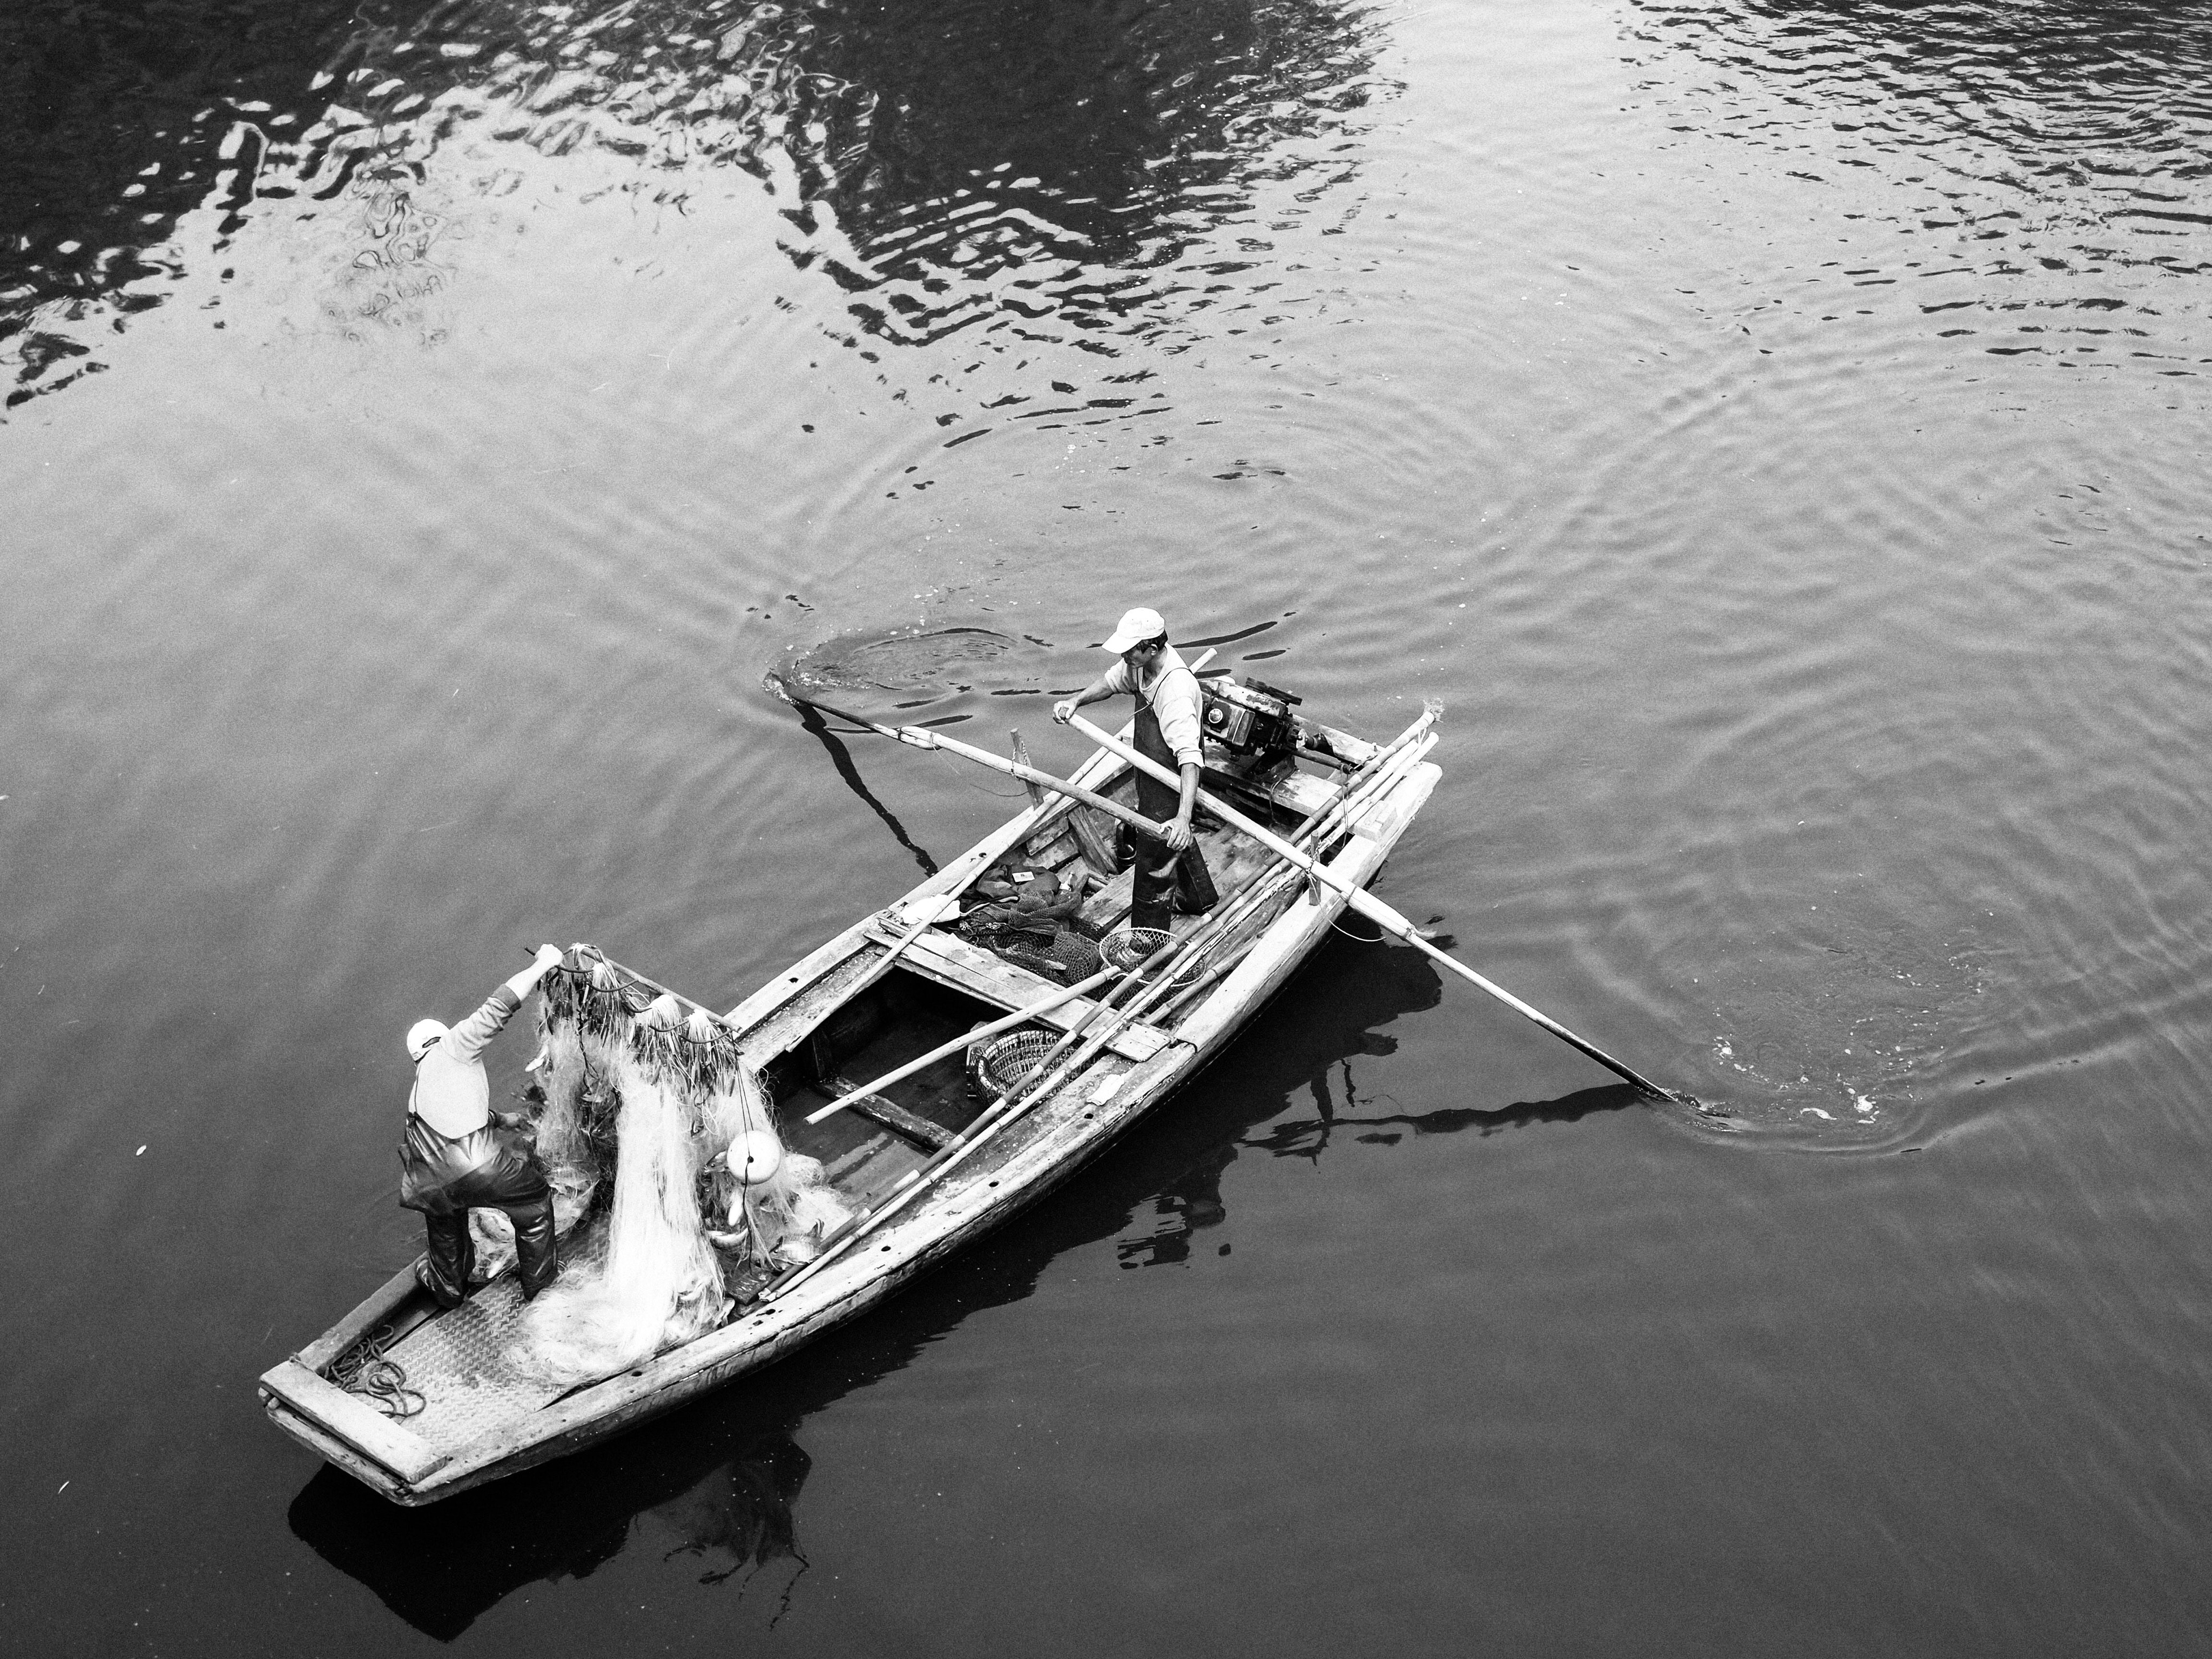 Лодка лове. Катер черно белый. Черная лодка с людьми на озере. Лодка черно белая картинка. Лодки на воде черно-белые фотографии.